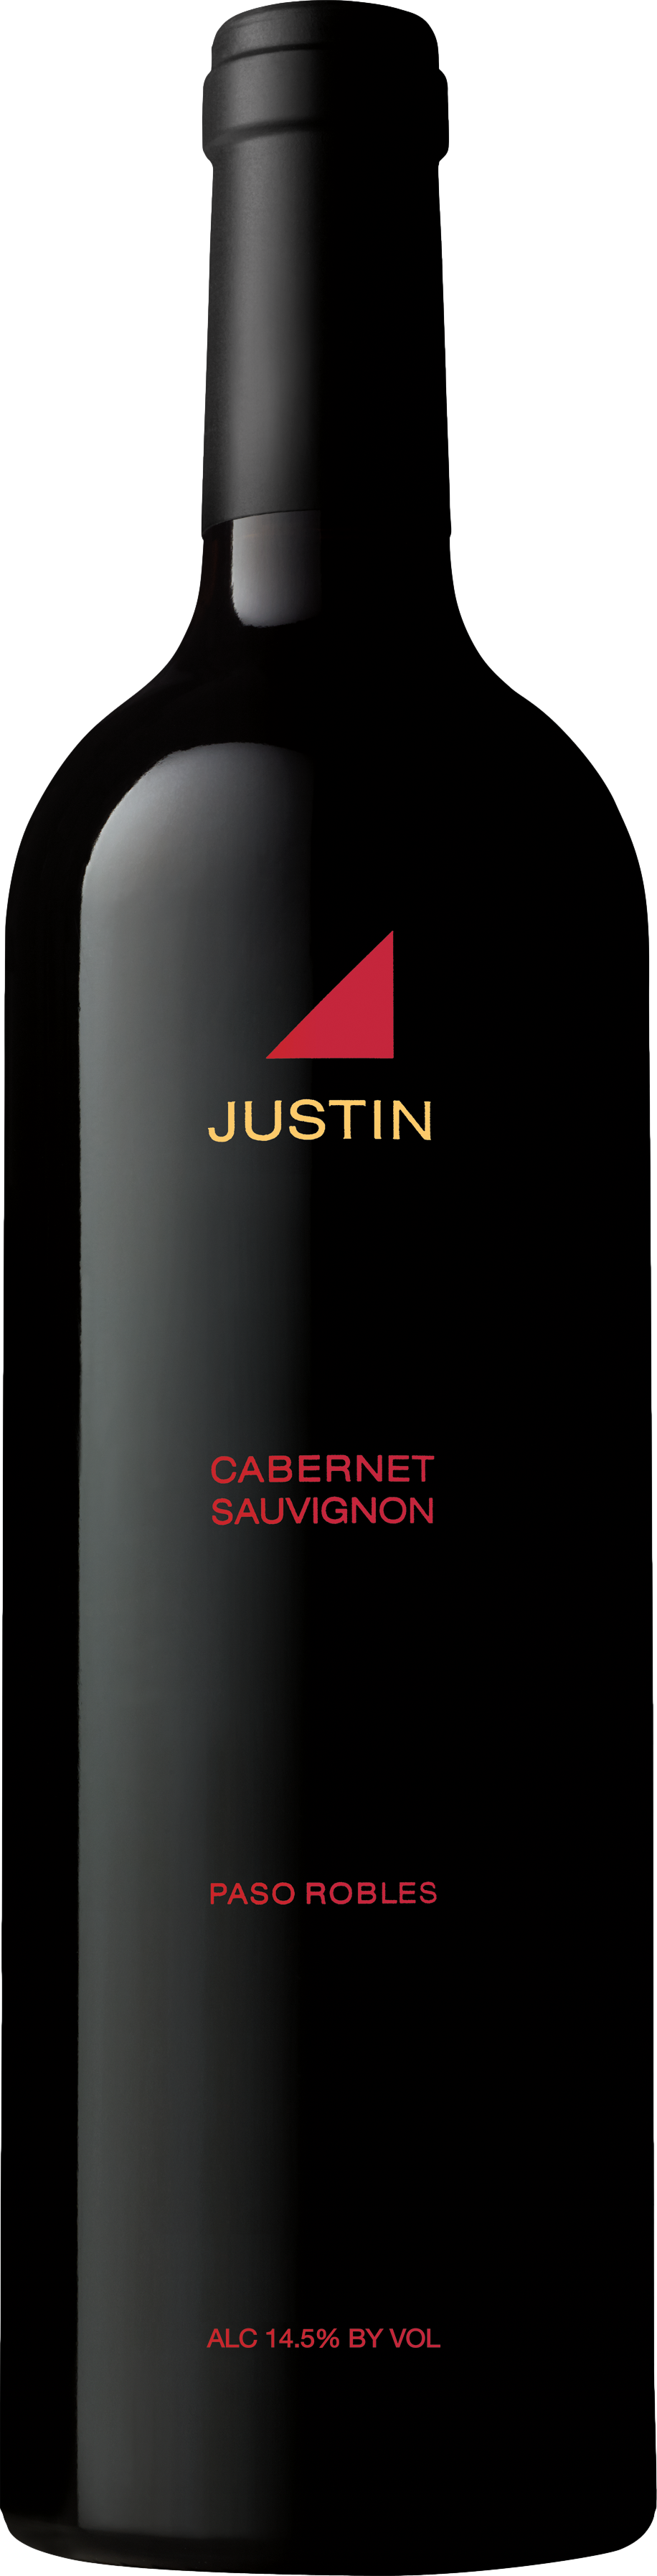 Justin Cabernet Sauvignon 2017